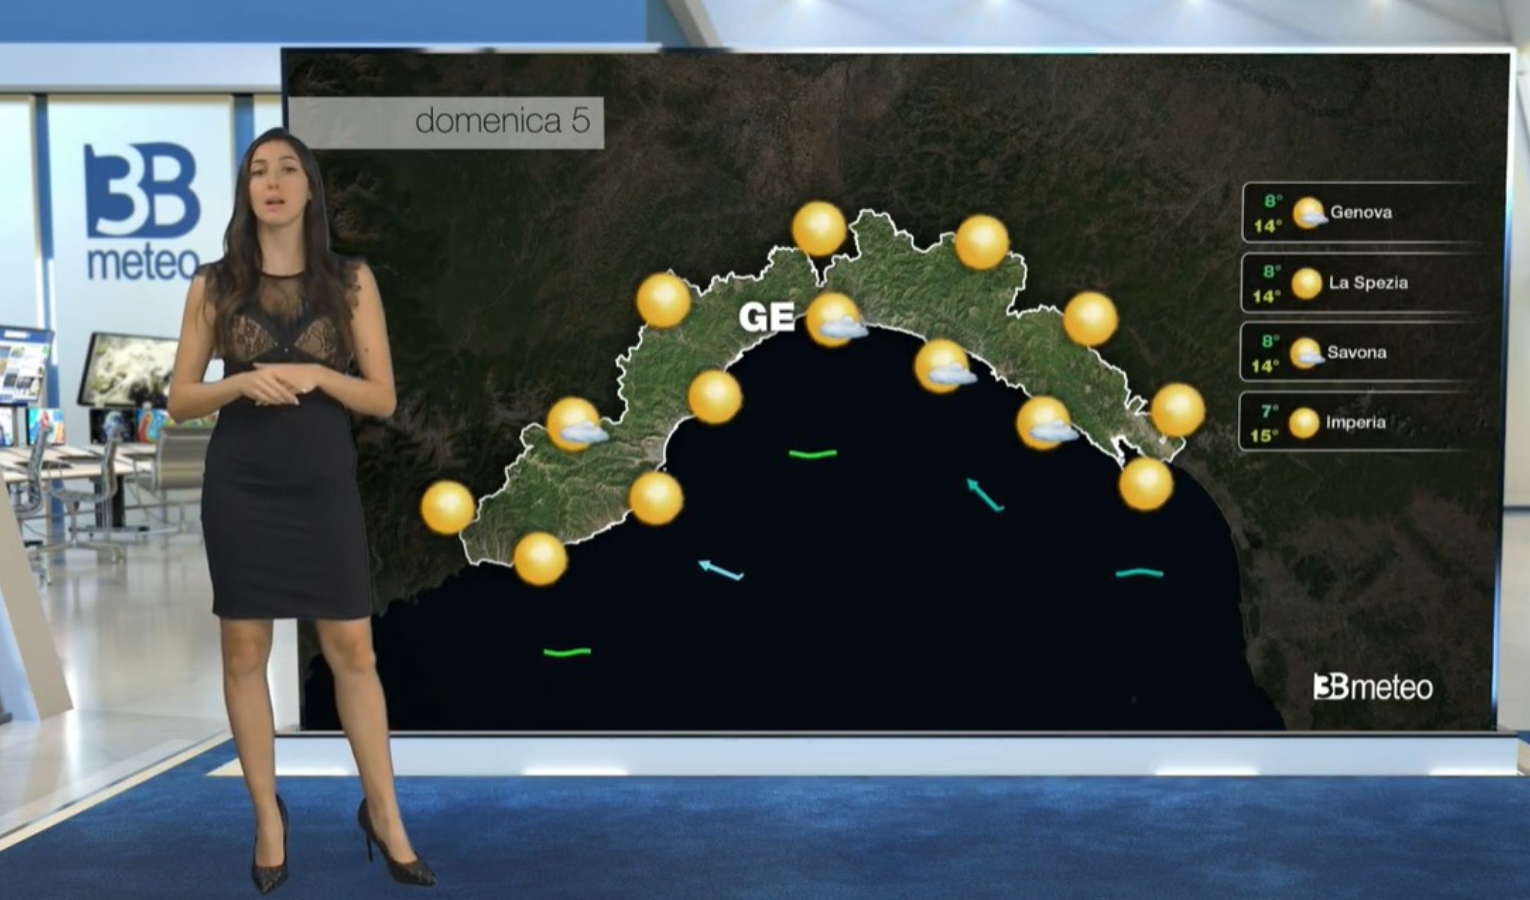 Meteo in Liguria: ecco le previsioni per le prossime ore